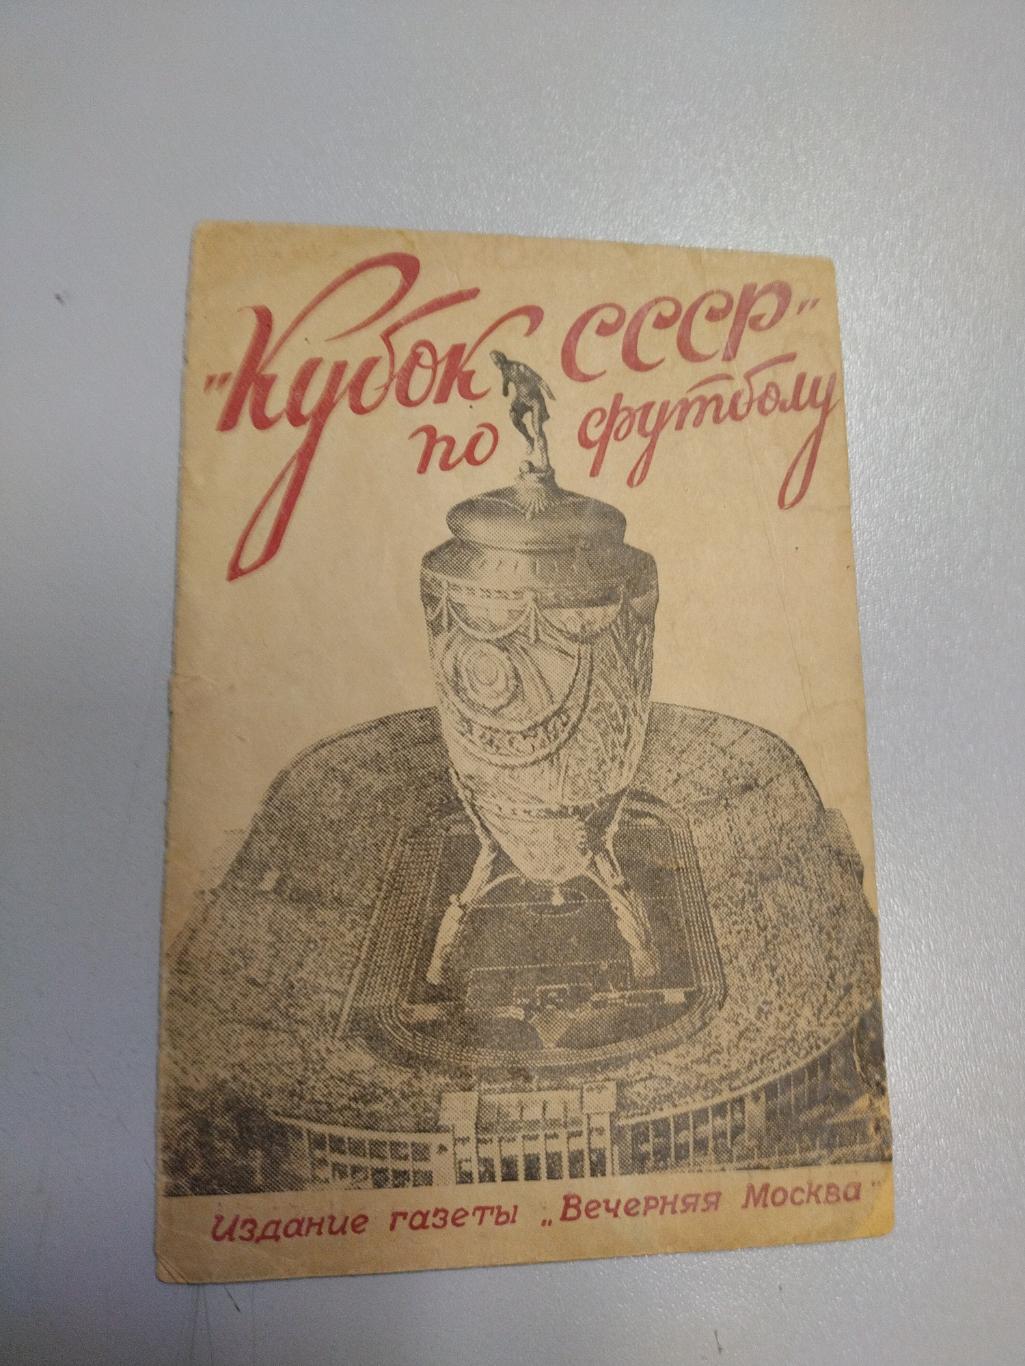 Календарь справочник футбол кубок СССР 1946